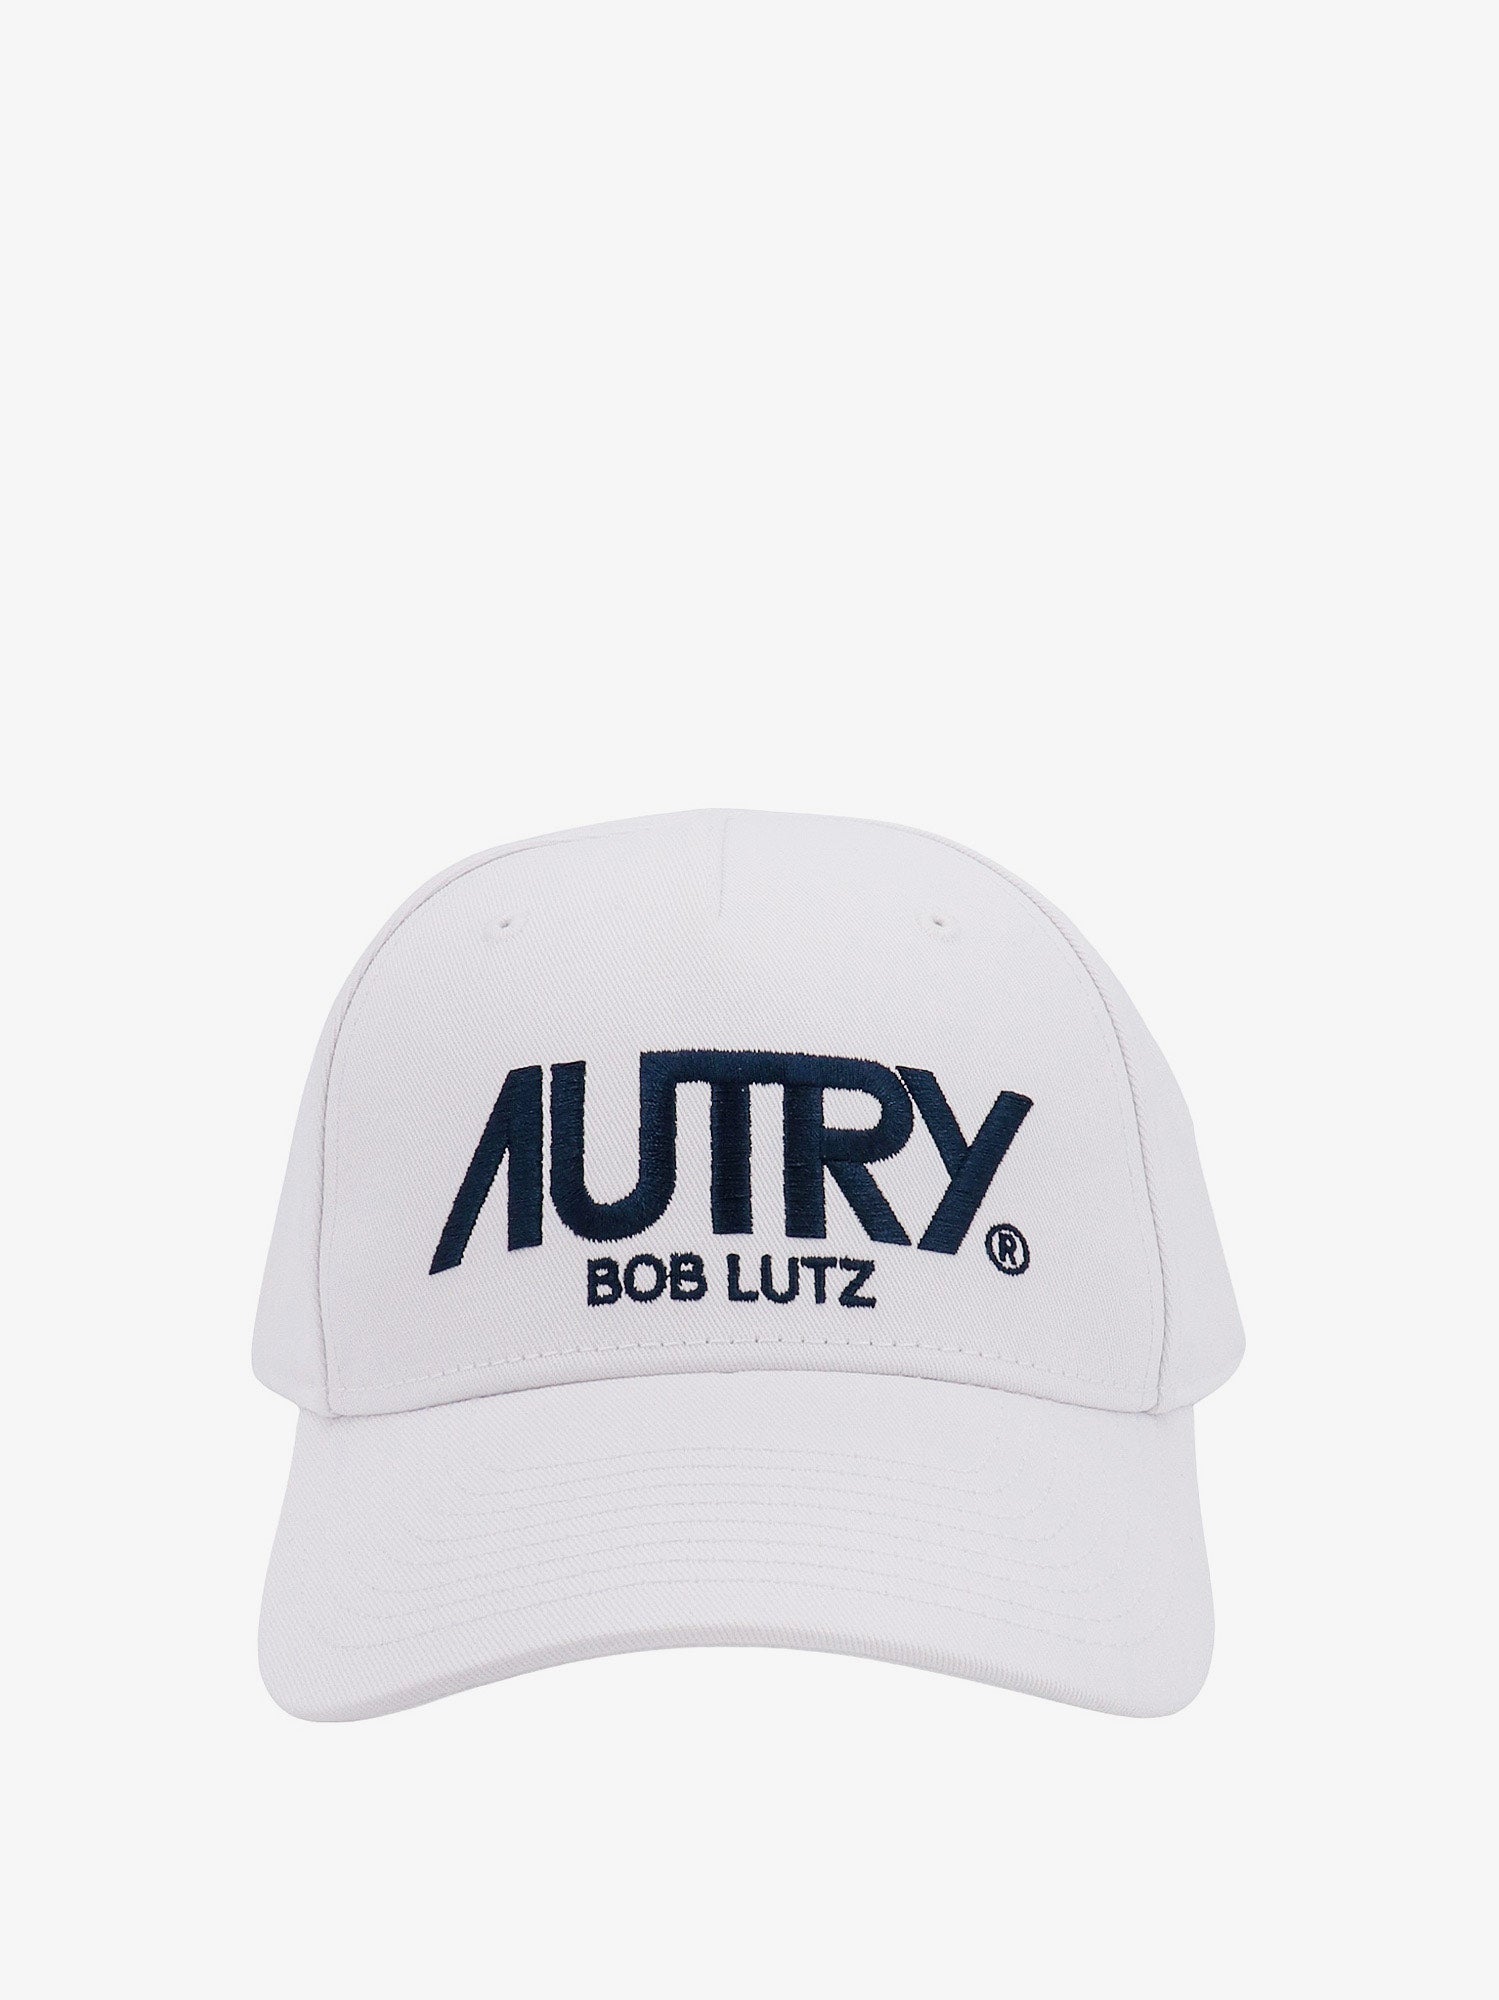 autry hat - man